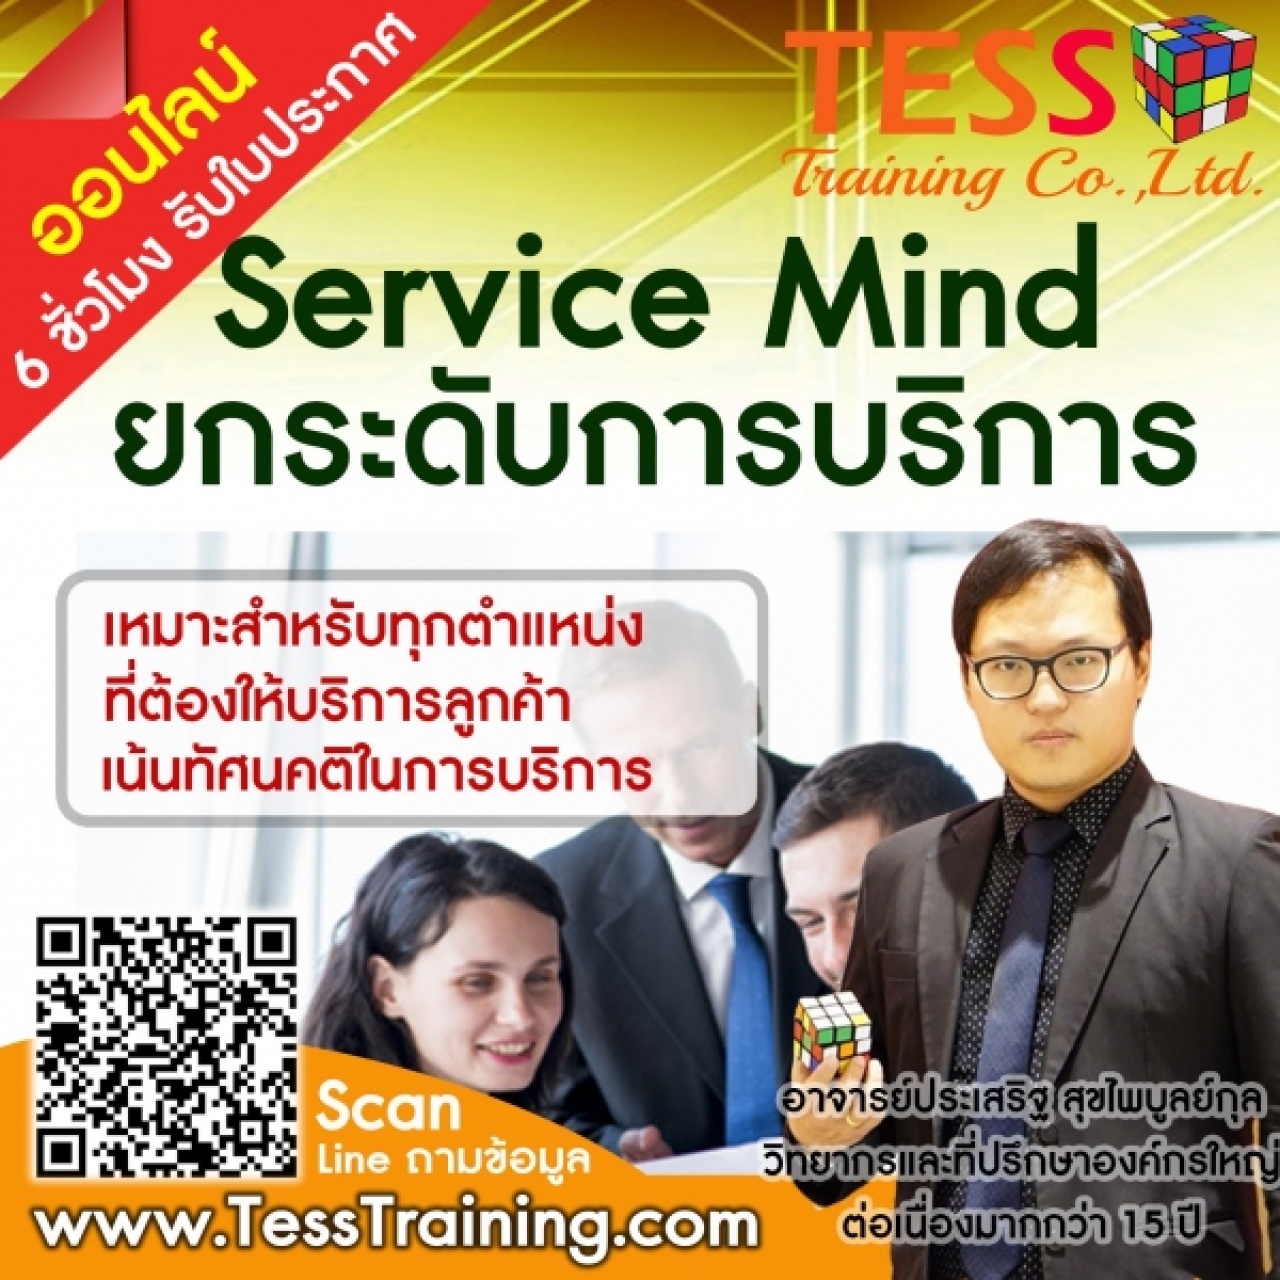 Public Training หลักสูตร Service mind ยกระดับการบริการให้เหนือชั้น อบรม 20 มกราคม 2566 อ.ประเสริฐ